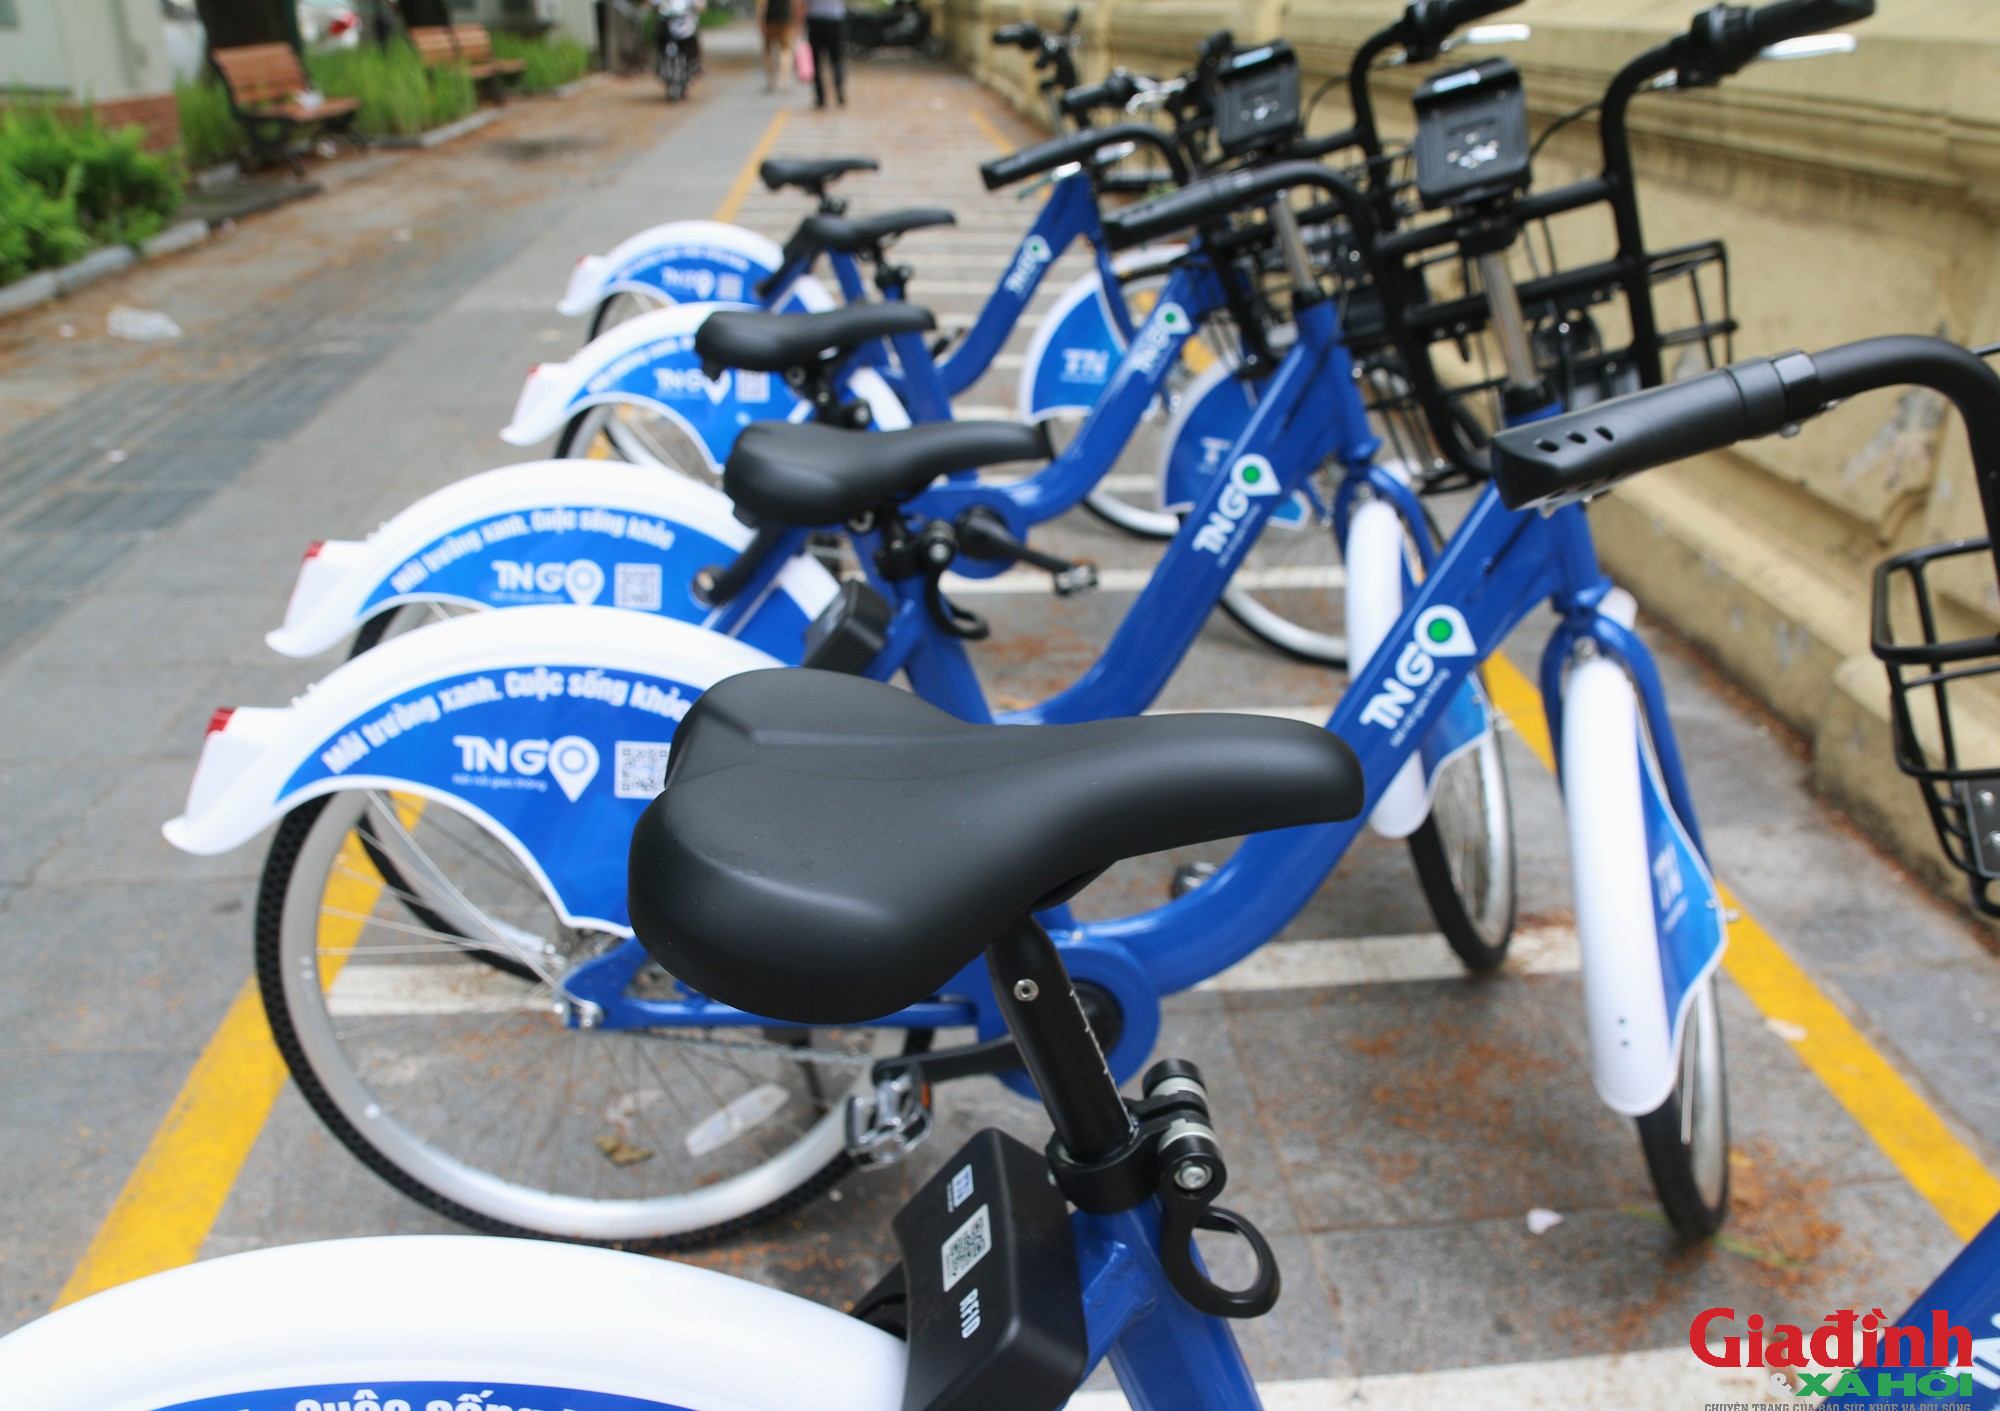 Dịch vụ xe đạp công cộng được triển khai tại Hà Nội và kỳ vọng thay đổi thói quen tham gia giao thông - Ảnh 8.